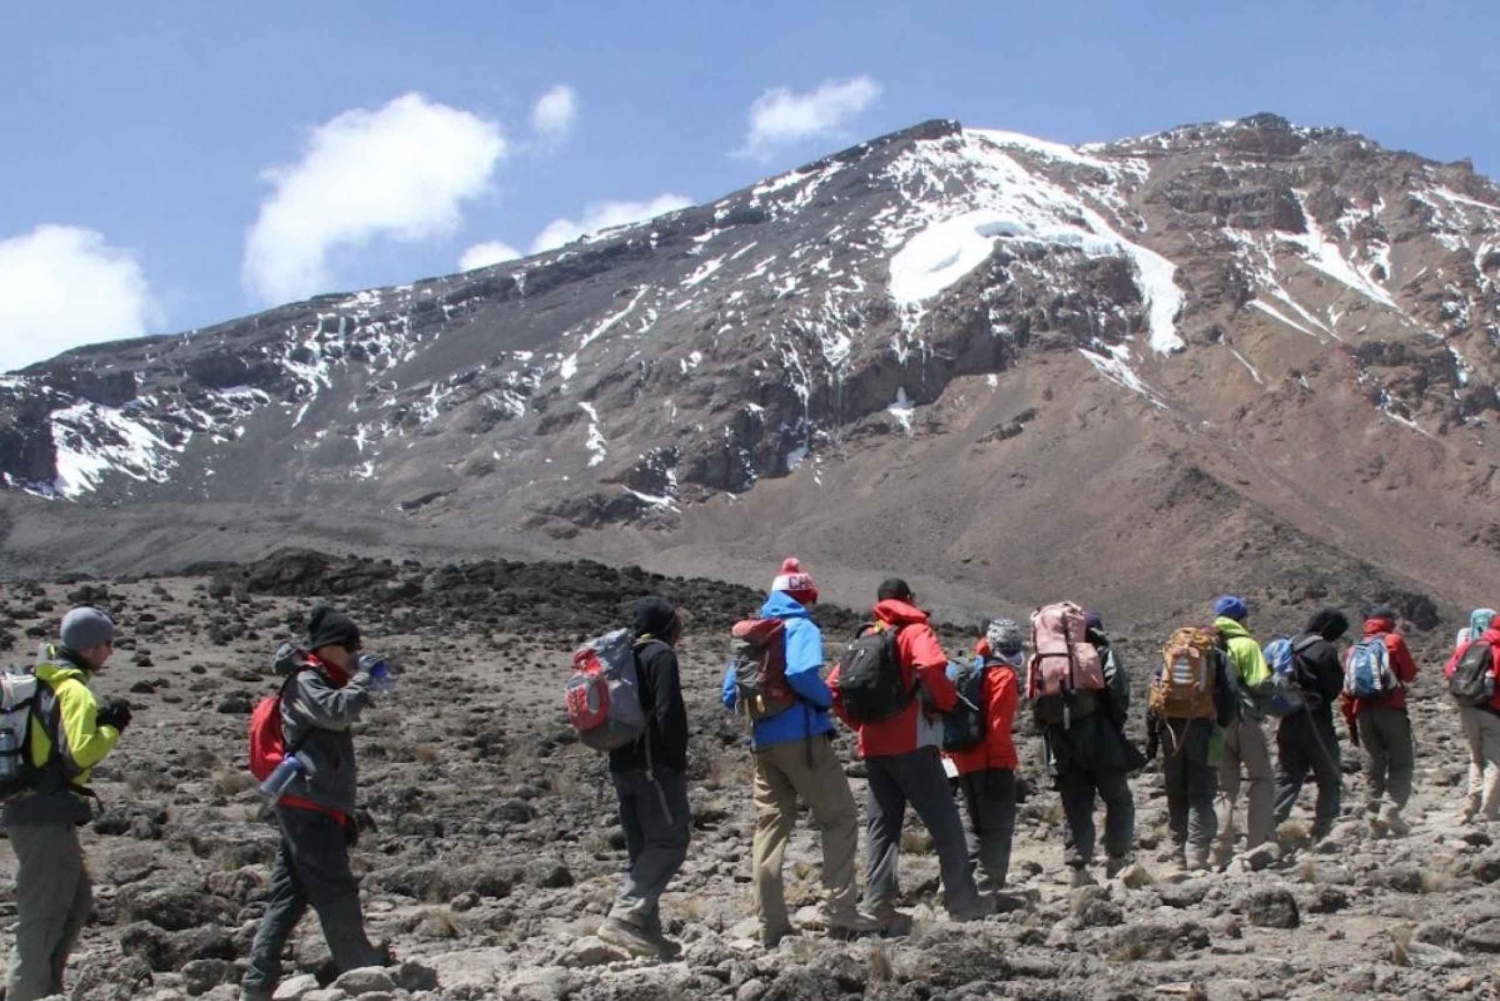 Parque Nacional do Kilimanjaro - Planalto Shira, caminhada de um dia